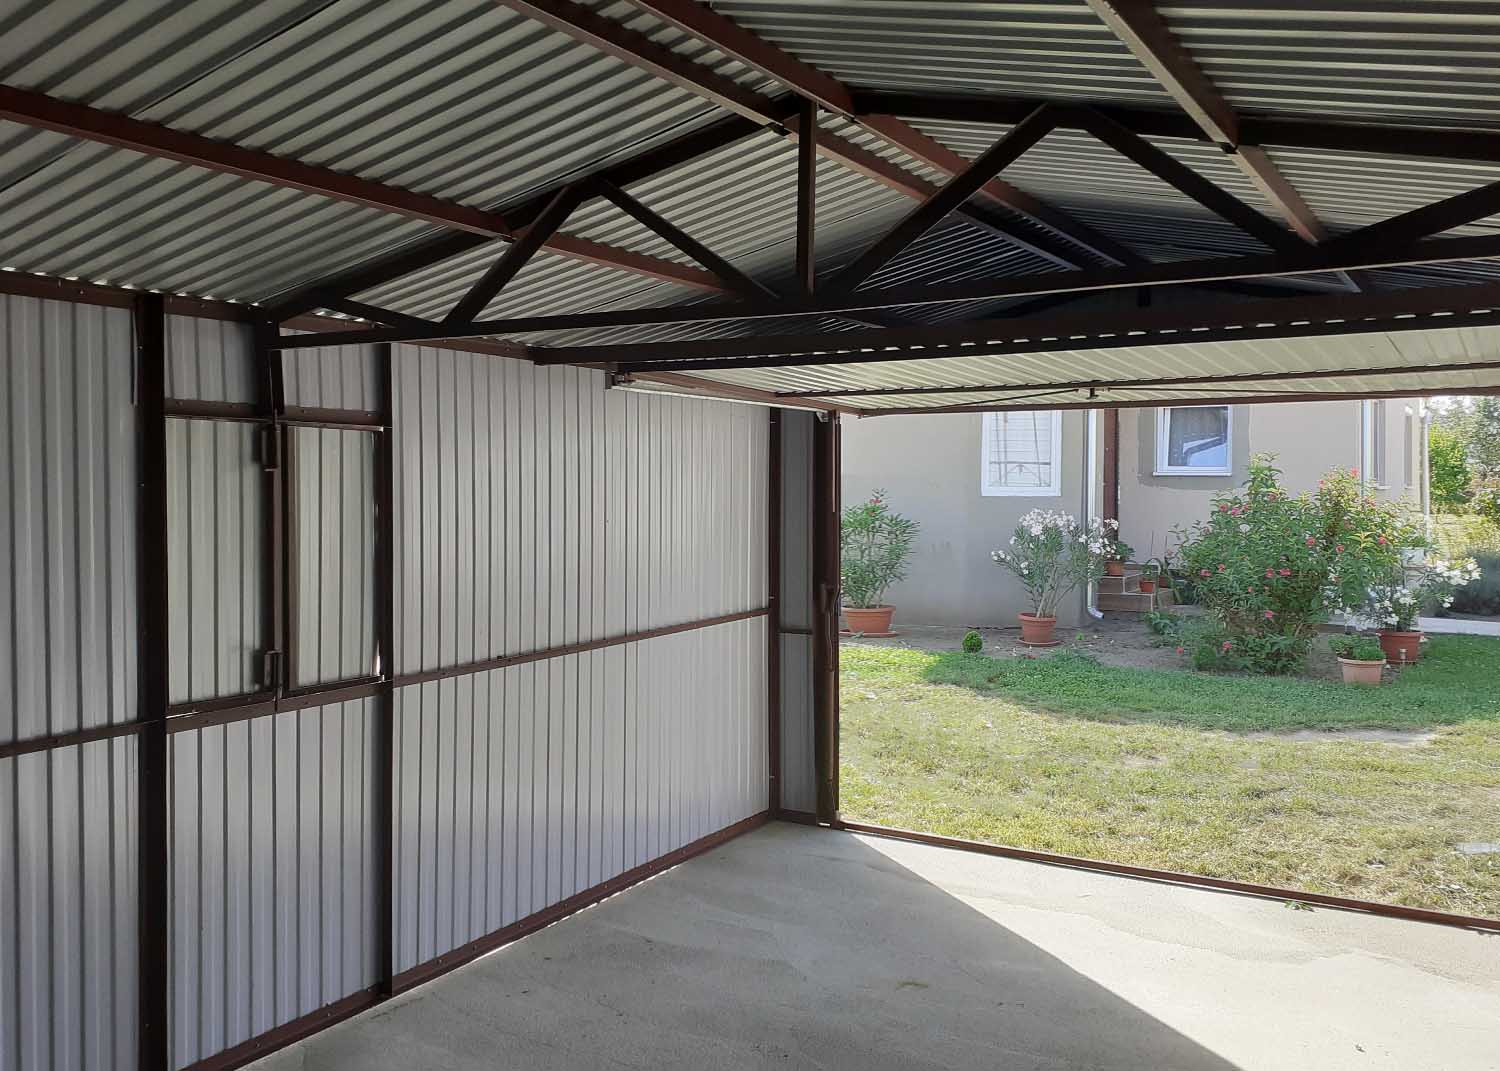 Plechová garáž 3,5x5m sedlová strecha